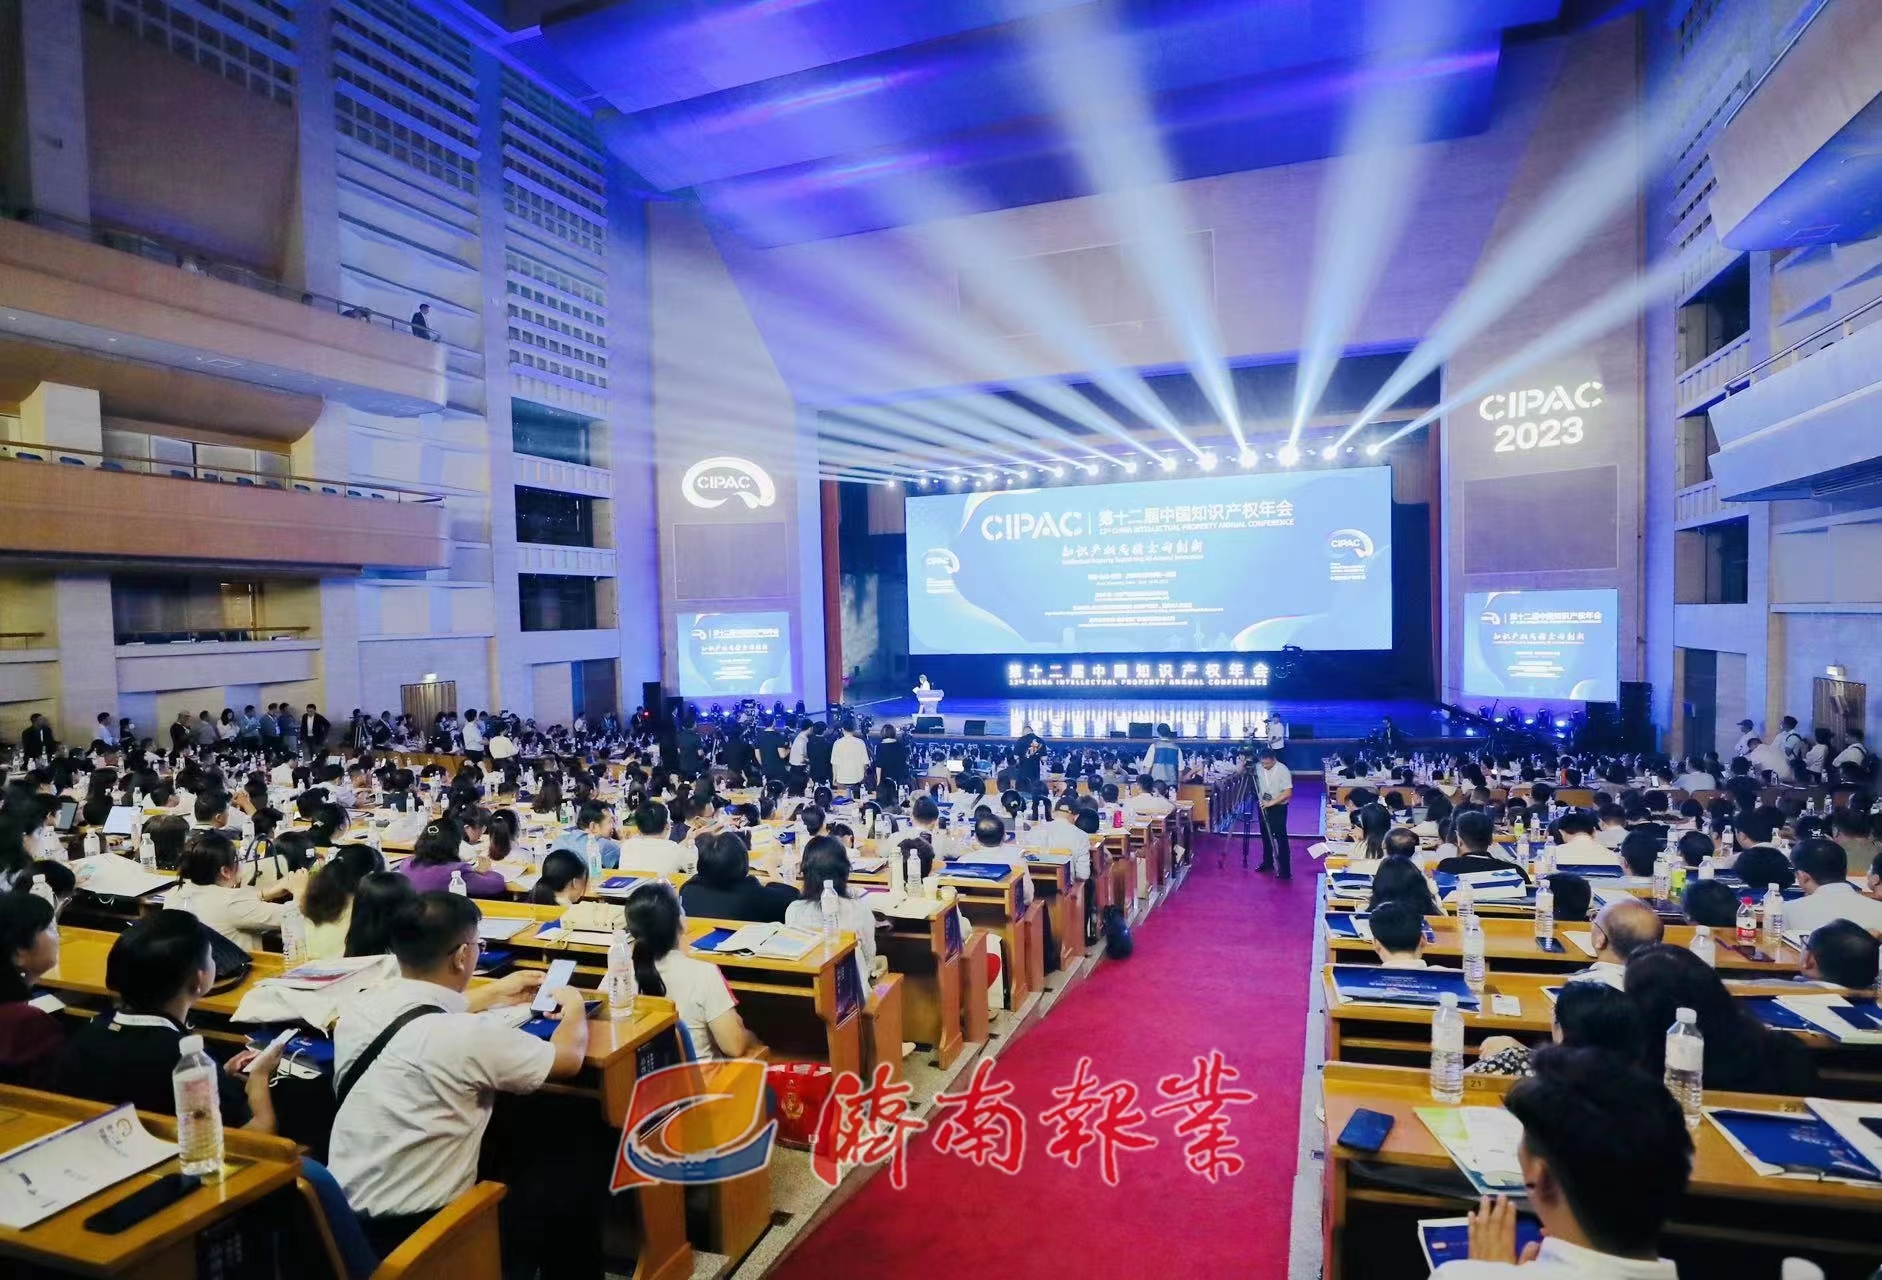 第十二届中国知识产权年会在济南开幕 申长雨 周乃翔出席